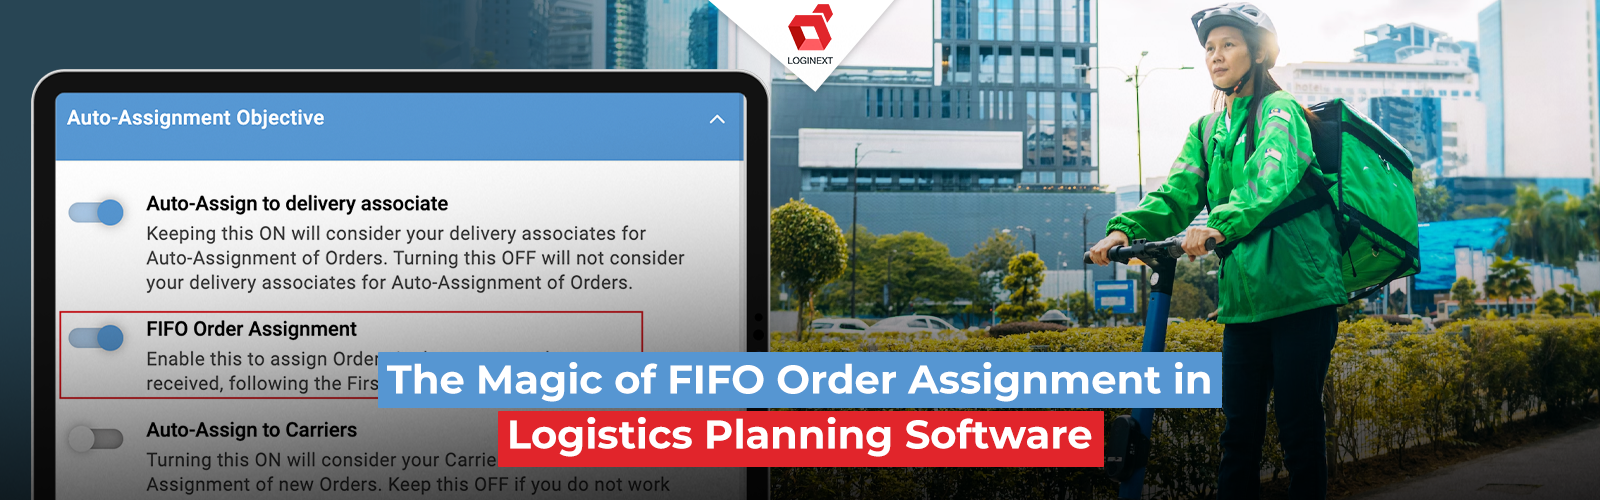 Die Magie der FIFO-Auftragszuweisung in Logistikplanungssoftware